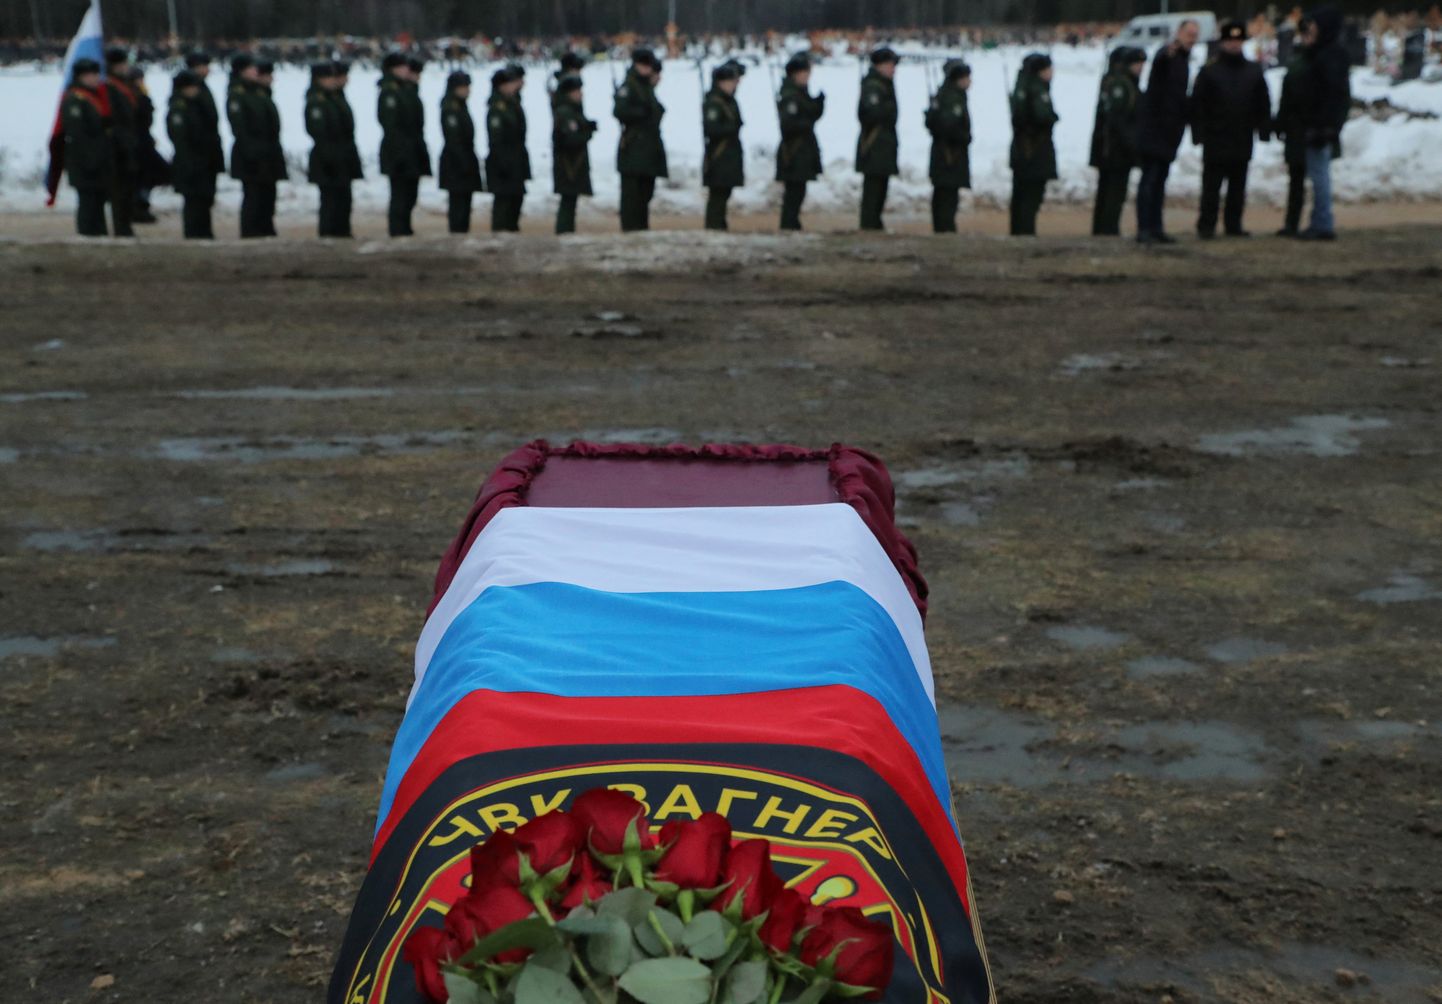 Элитная 155-я бригада морской пехоты российских вооруженных сил потеряла по меньшей мере 234 человека личного состава погибшими.